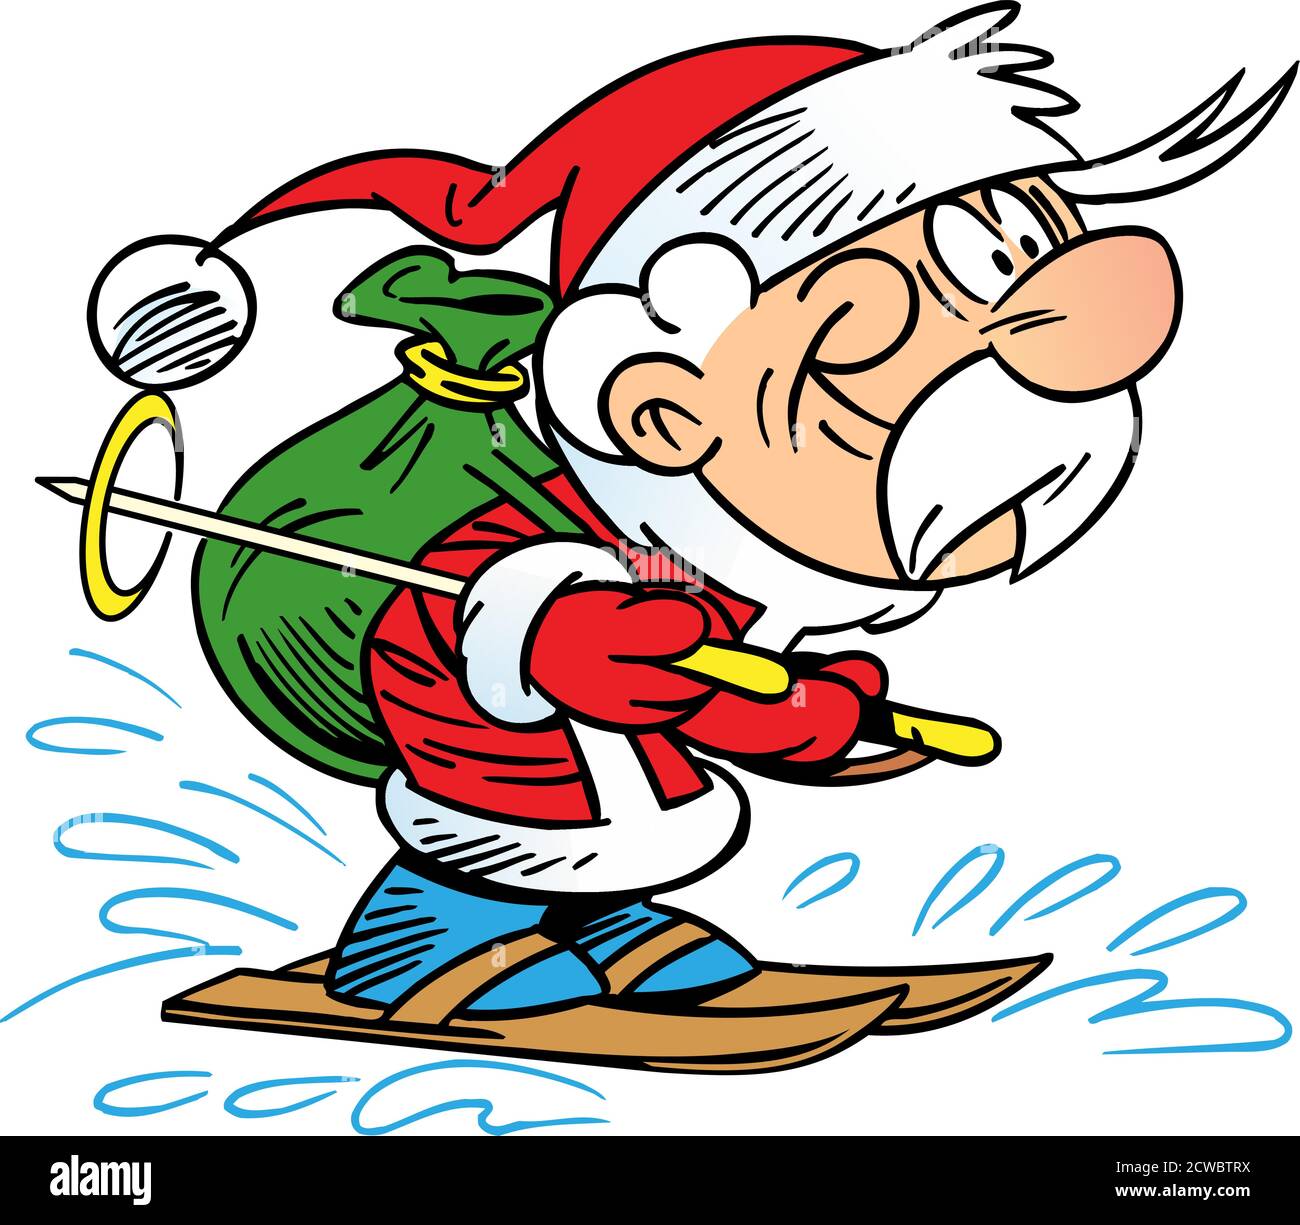 Vektorgrafik zeigt den Weihnachtsmann auf Skiern, der mit einem Sack Neujahrsgeschenke eilt Stock Vektor